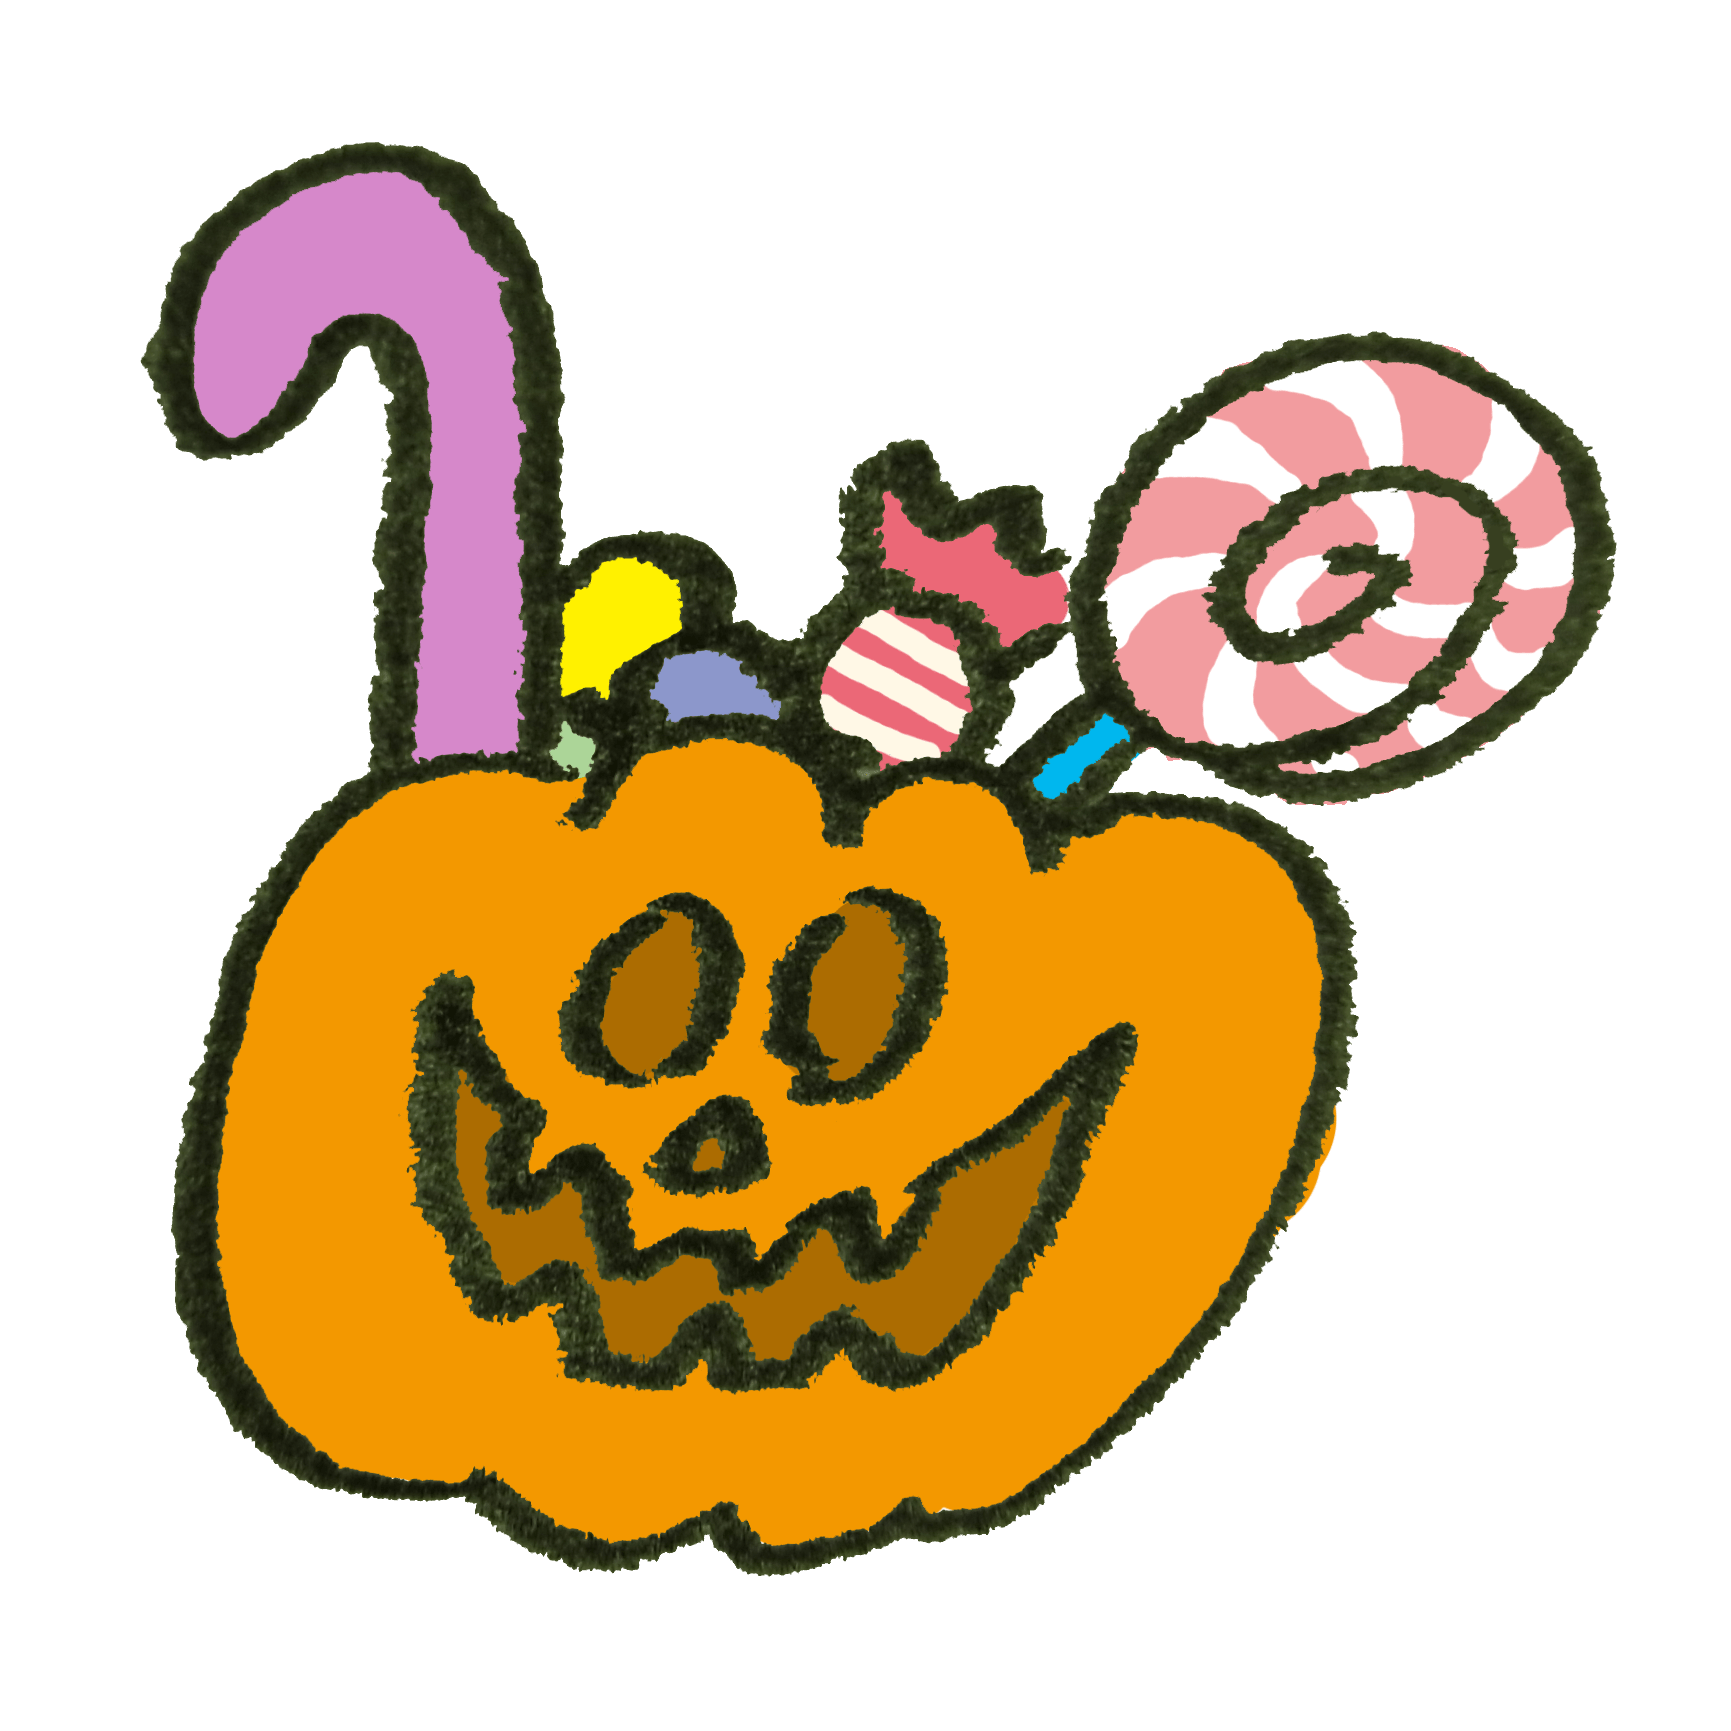 ハロウィンにそなえてオバケかぼちゃの中にお菓子をぎっしり詰め込んだ イラスト素材 超多くの無料かわいいイラスト素材